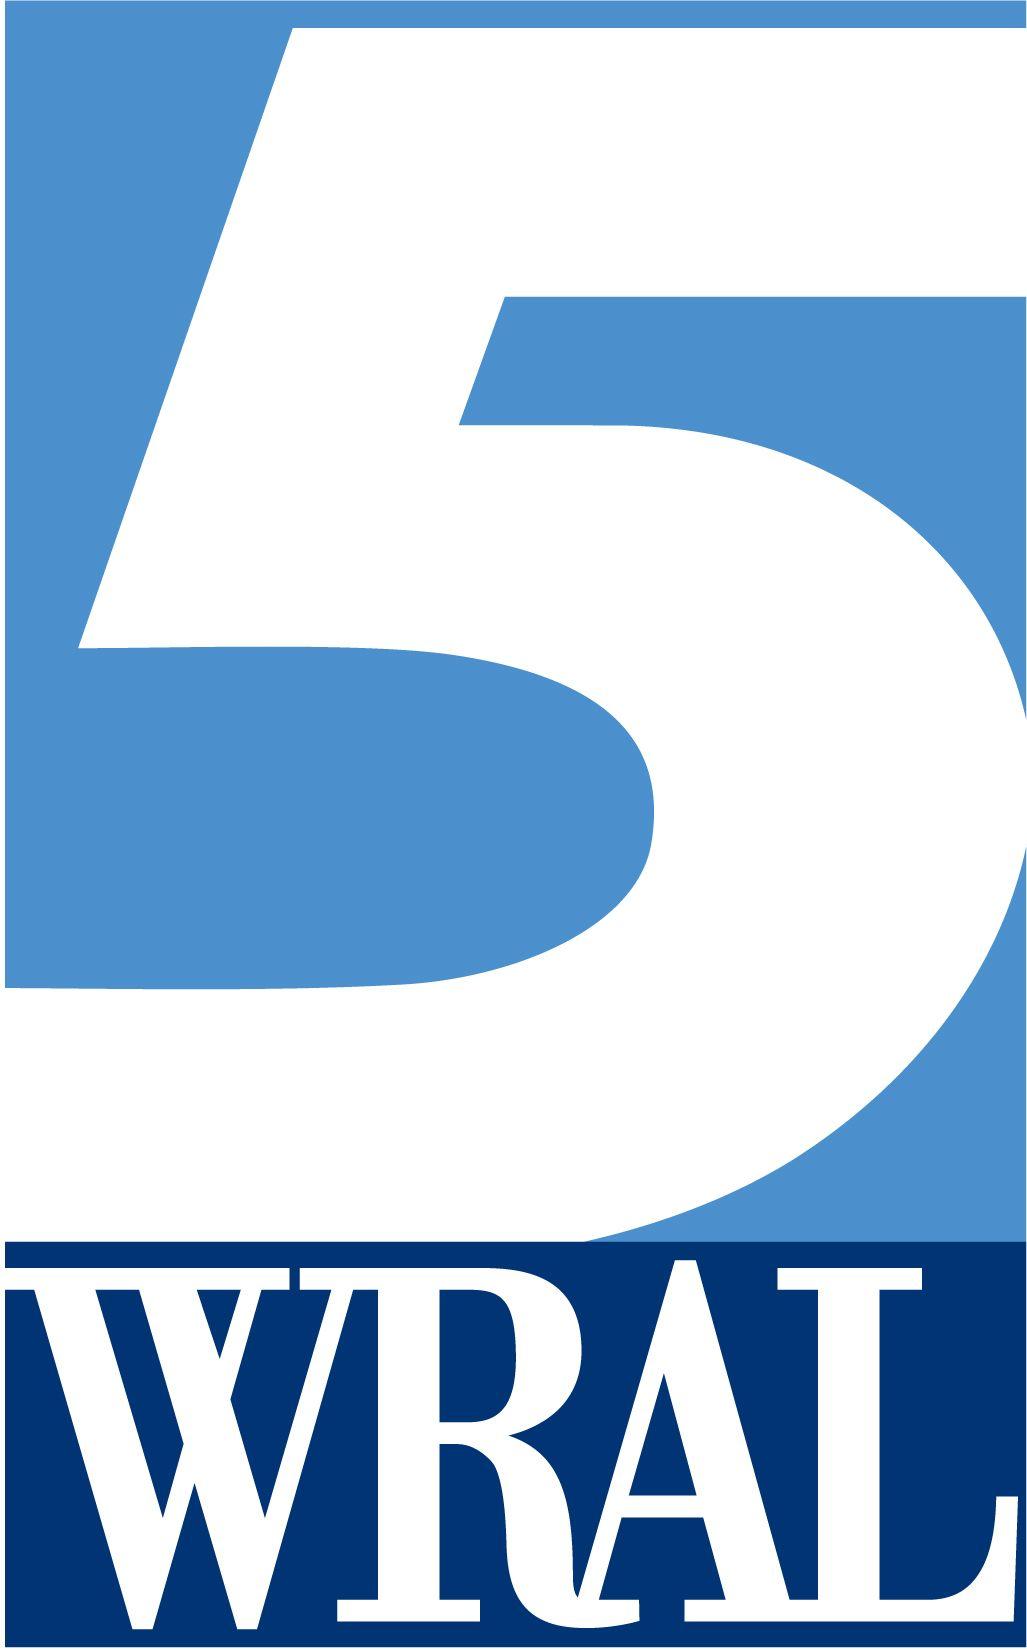 Wral.com Logo - WRAL TV. Capitol Broadcasting Company